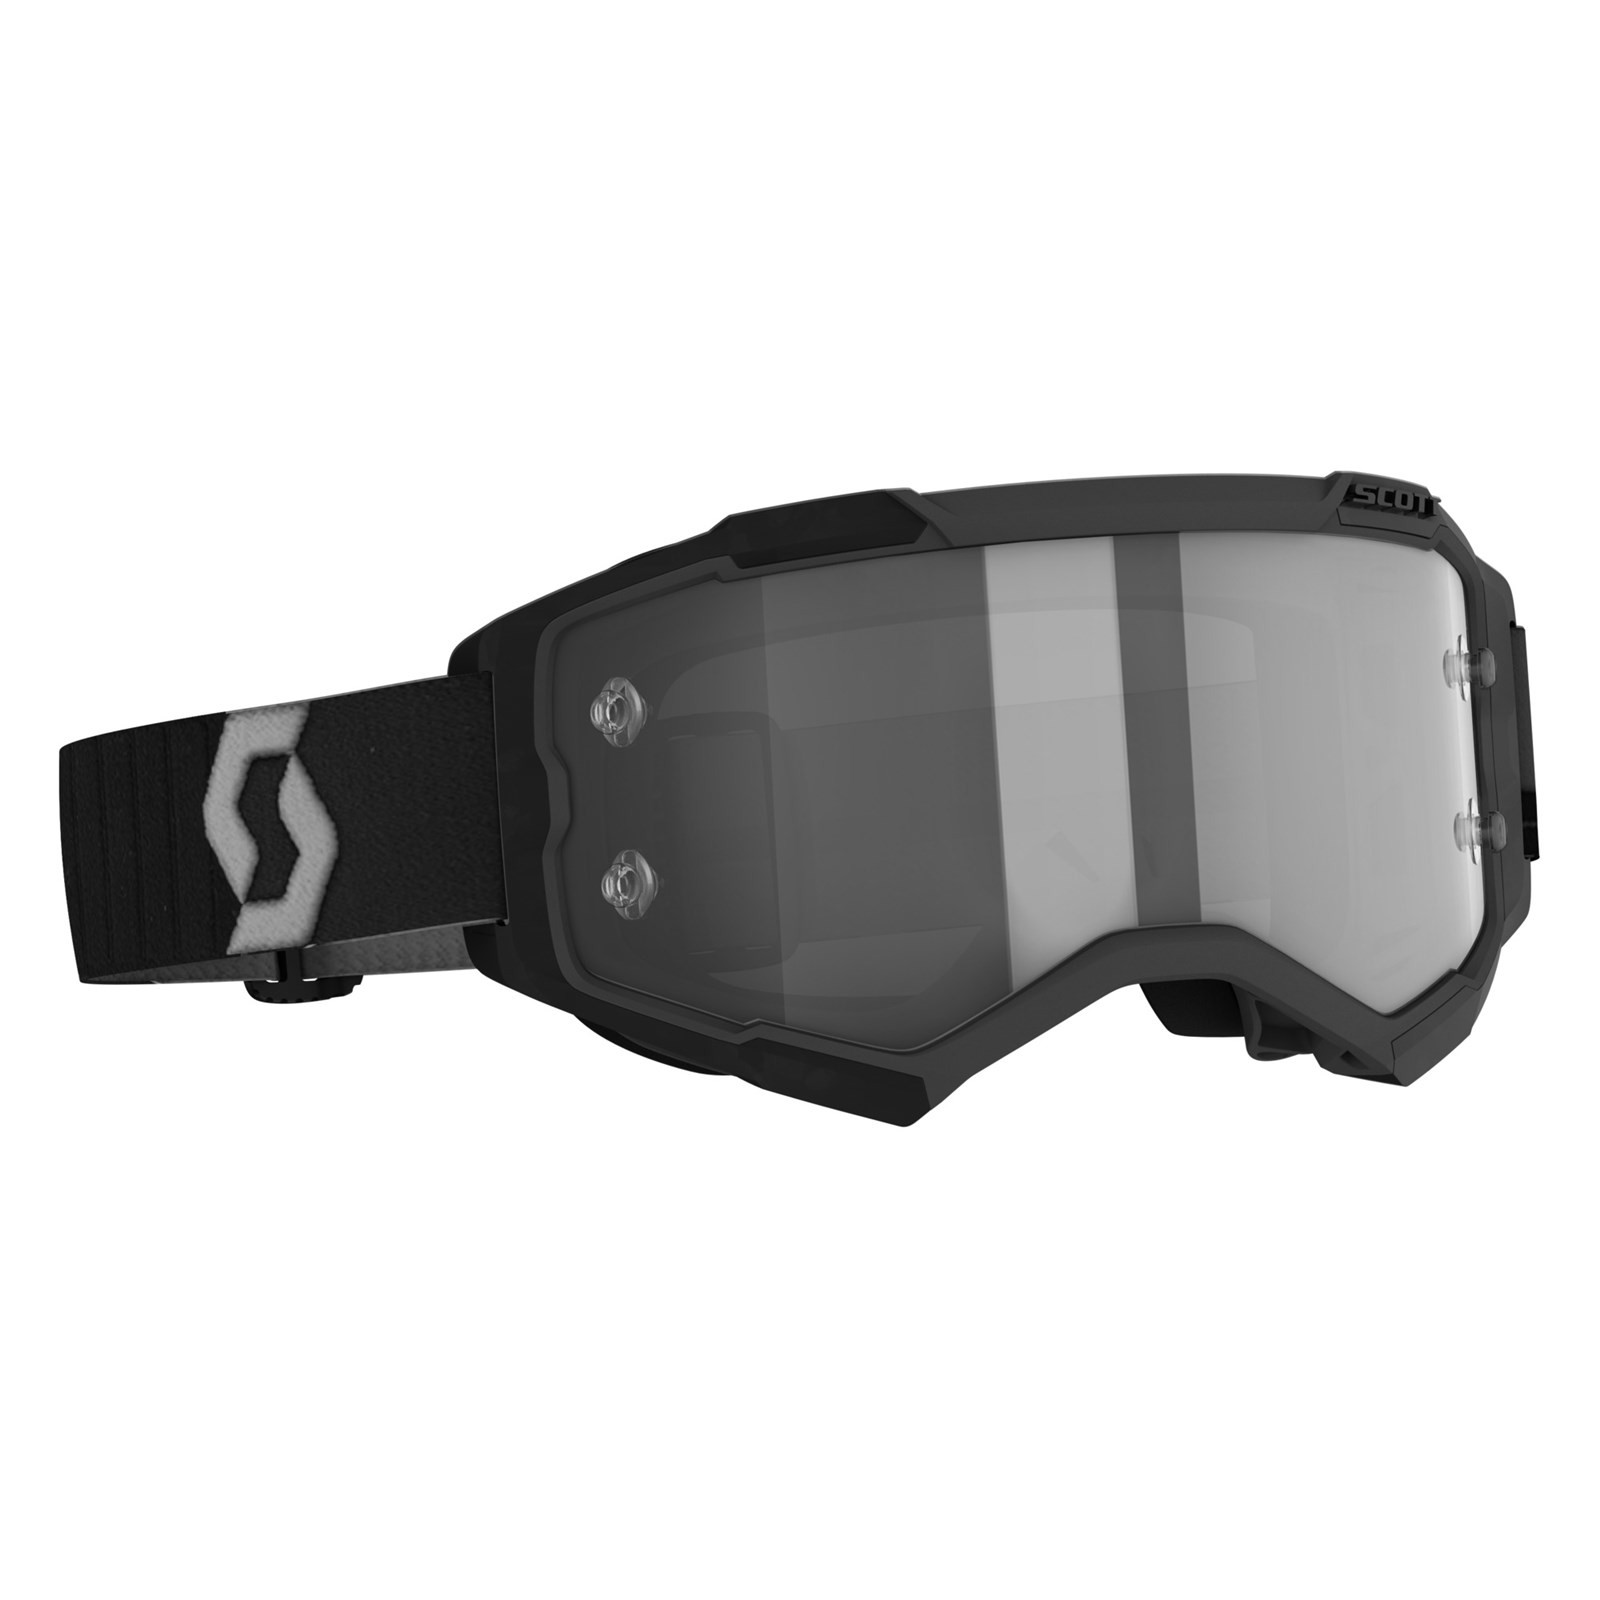 Vintage-Optik UV-Schutz League & Co Brille für Motocross / Piloten PU-Leder und PC-Linse Linse silberfarben, Rahmen schwarz 